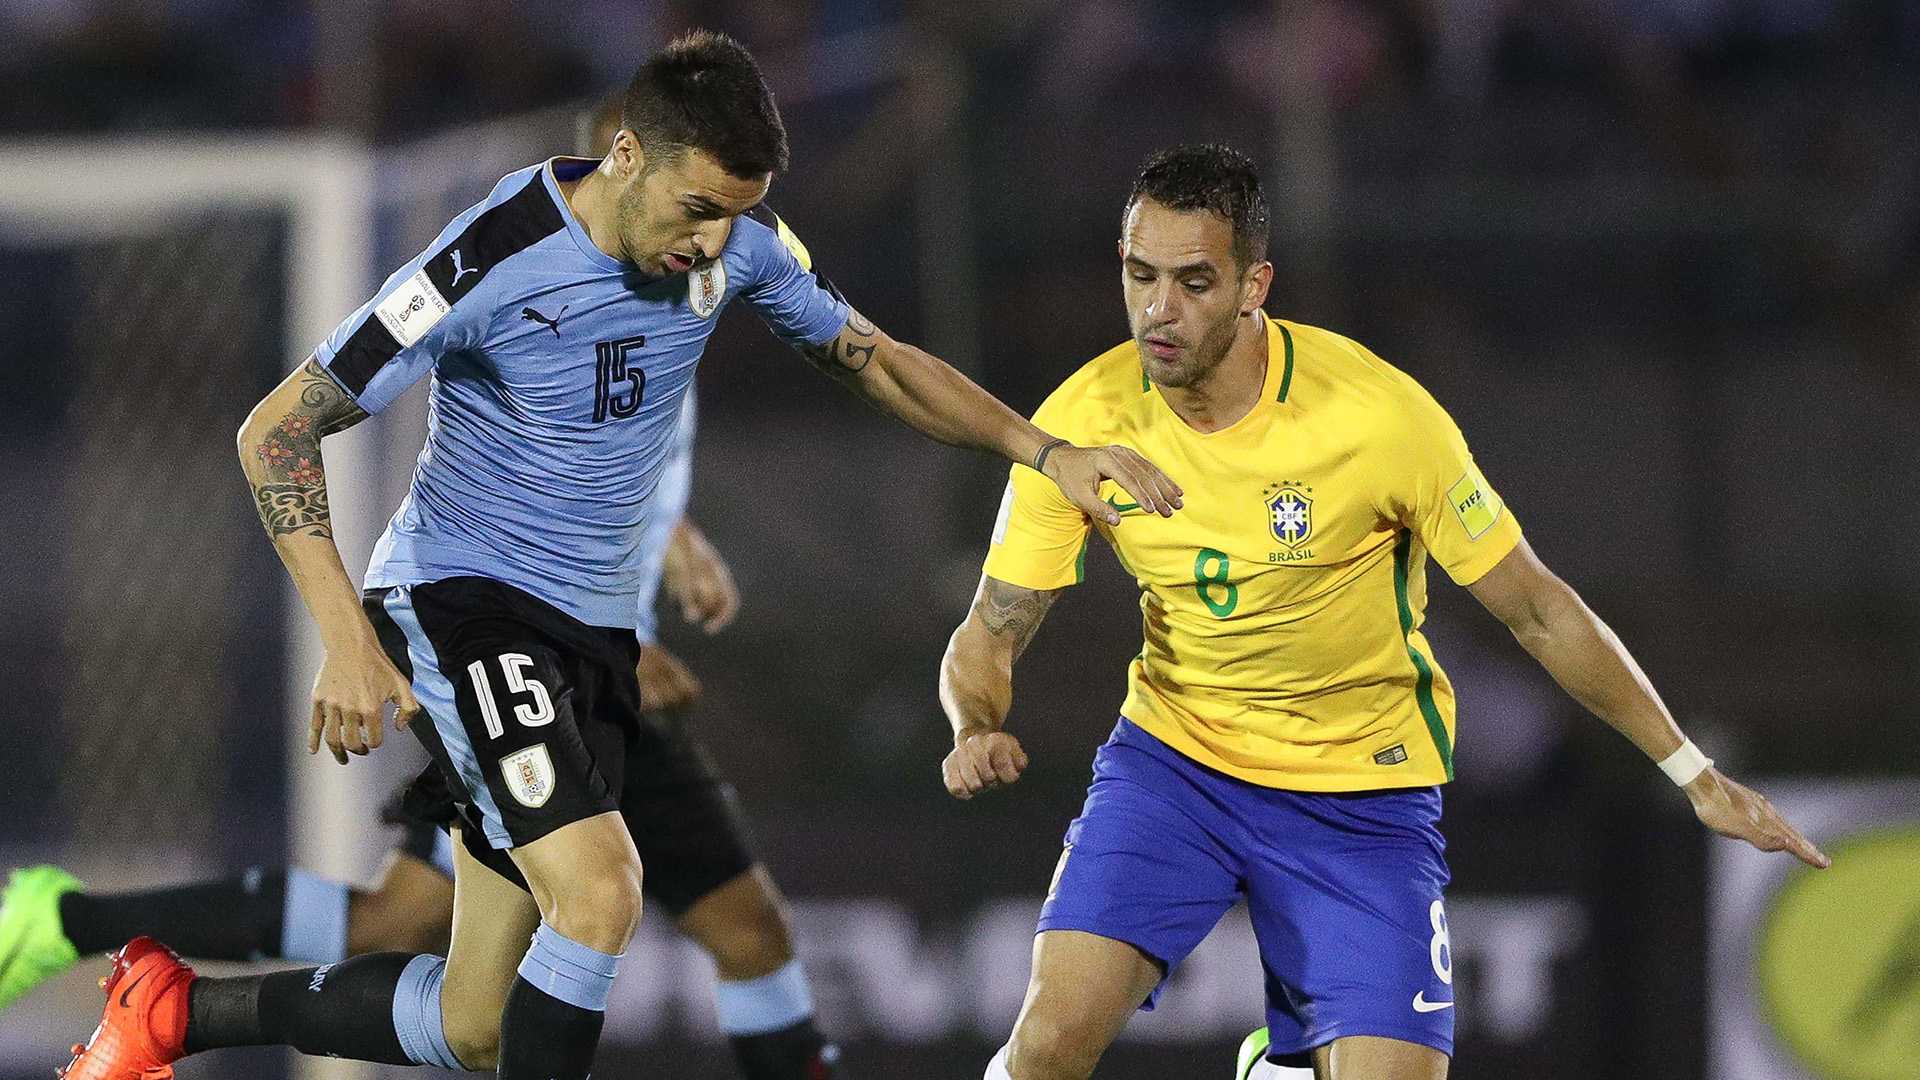 O Uruguai saiu na frente, mas o Brasil empatou o jogo ainda na primeira etapa (Crédito: Pedro Martins/MoWa Press)